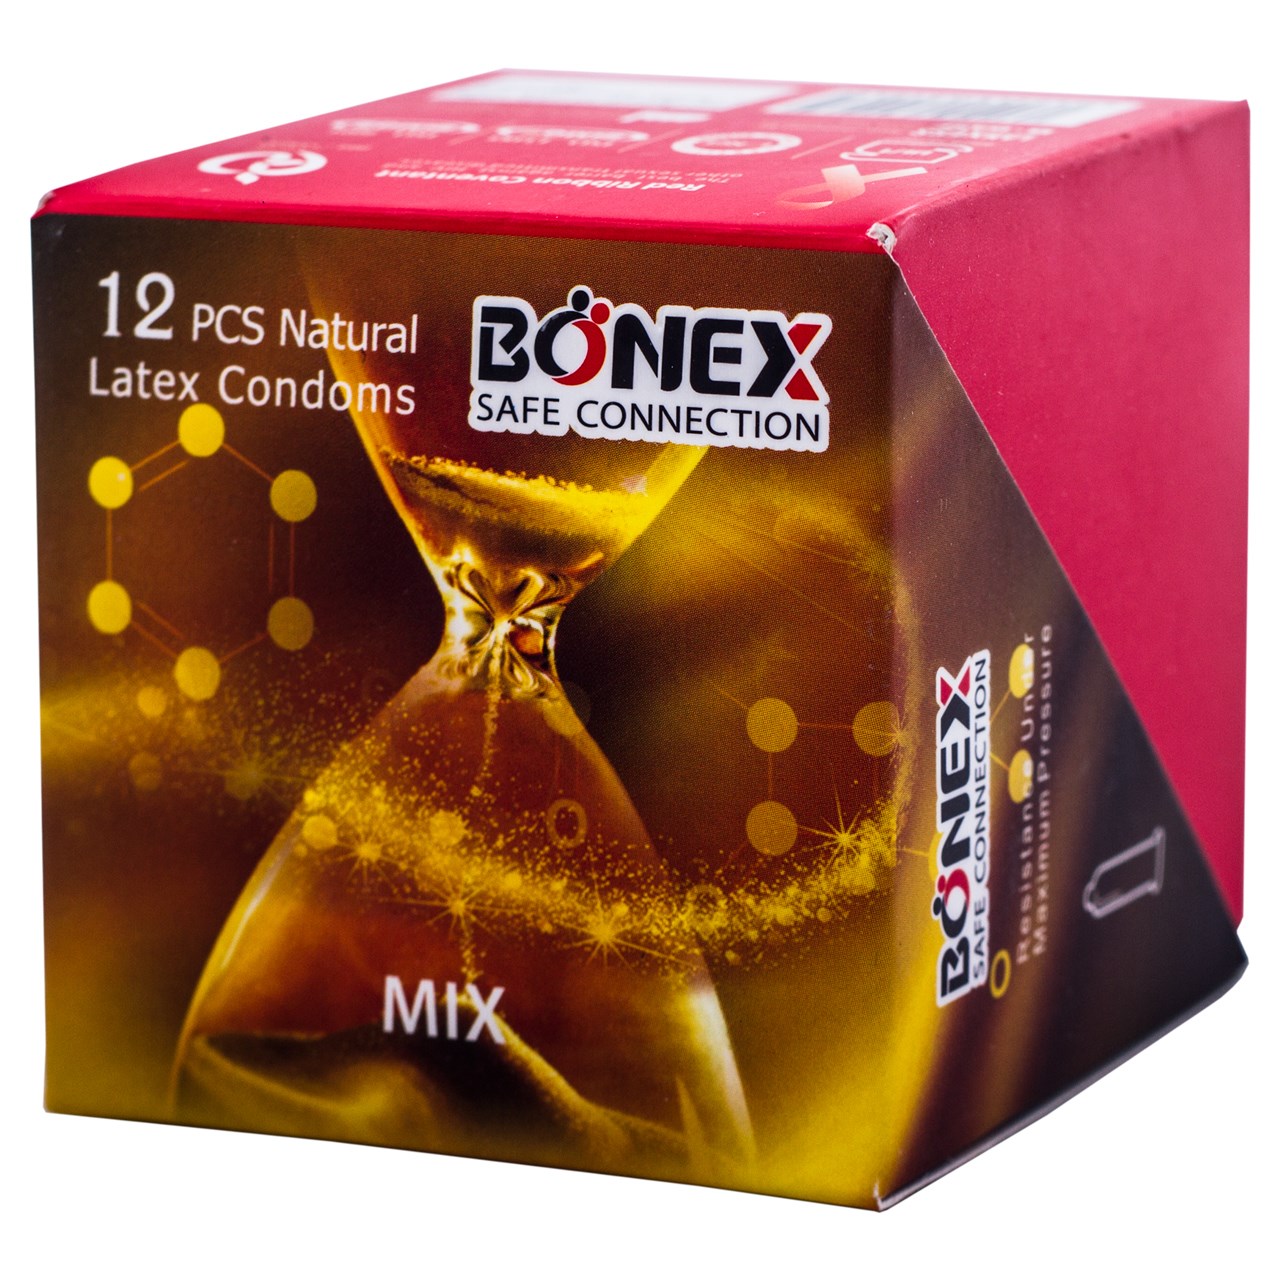 کاندوم بونکس مدل mix بسته 12 عددی